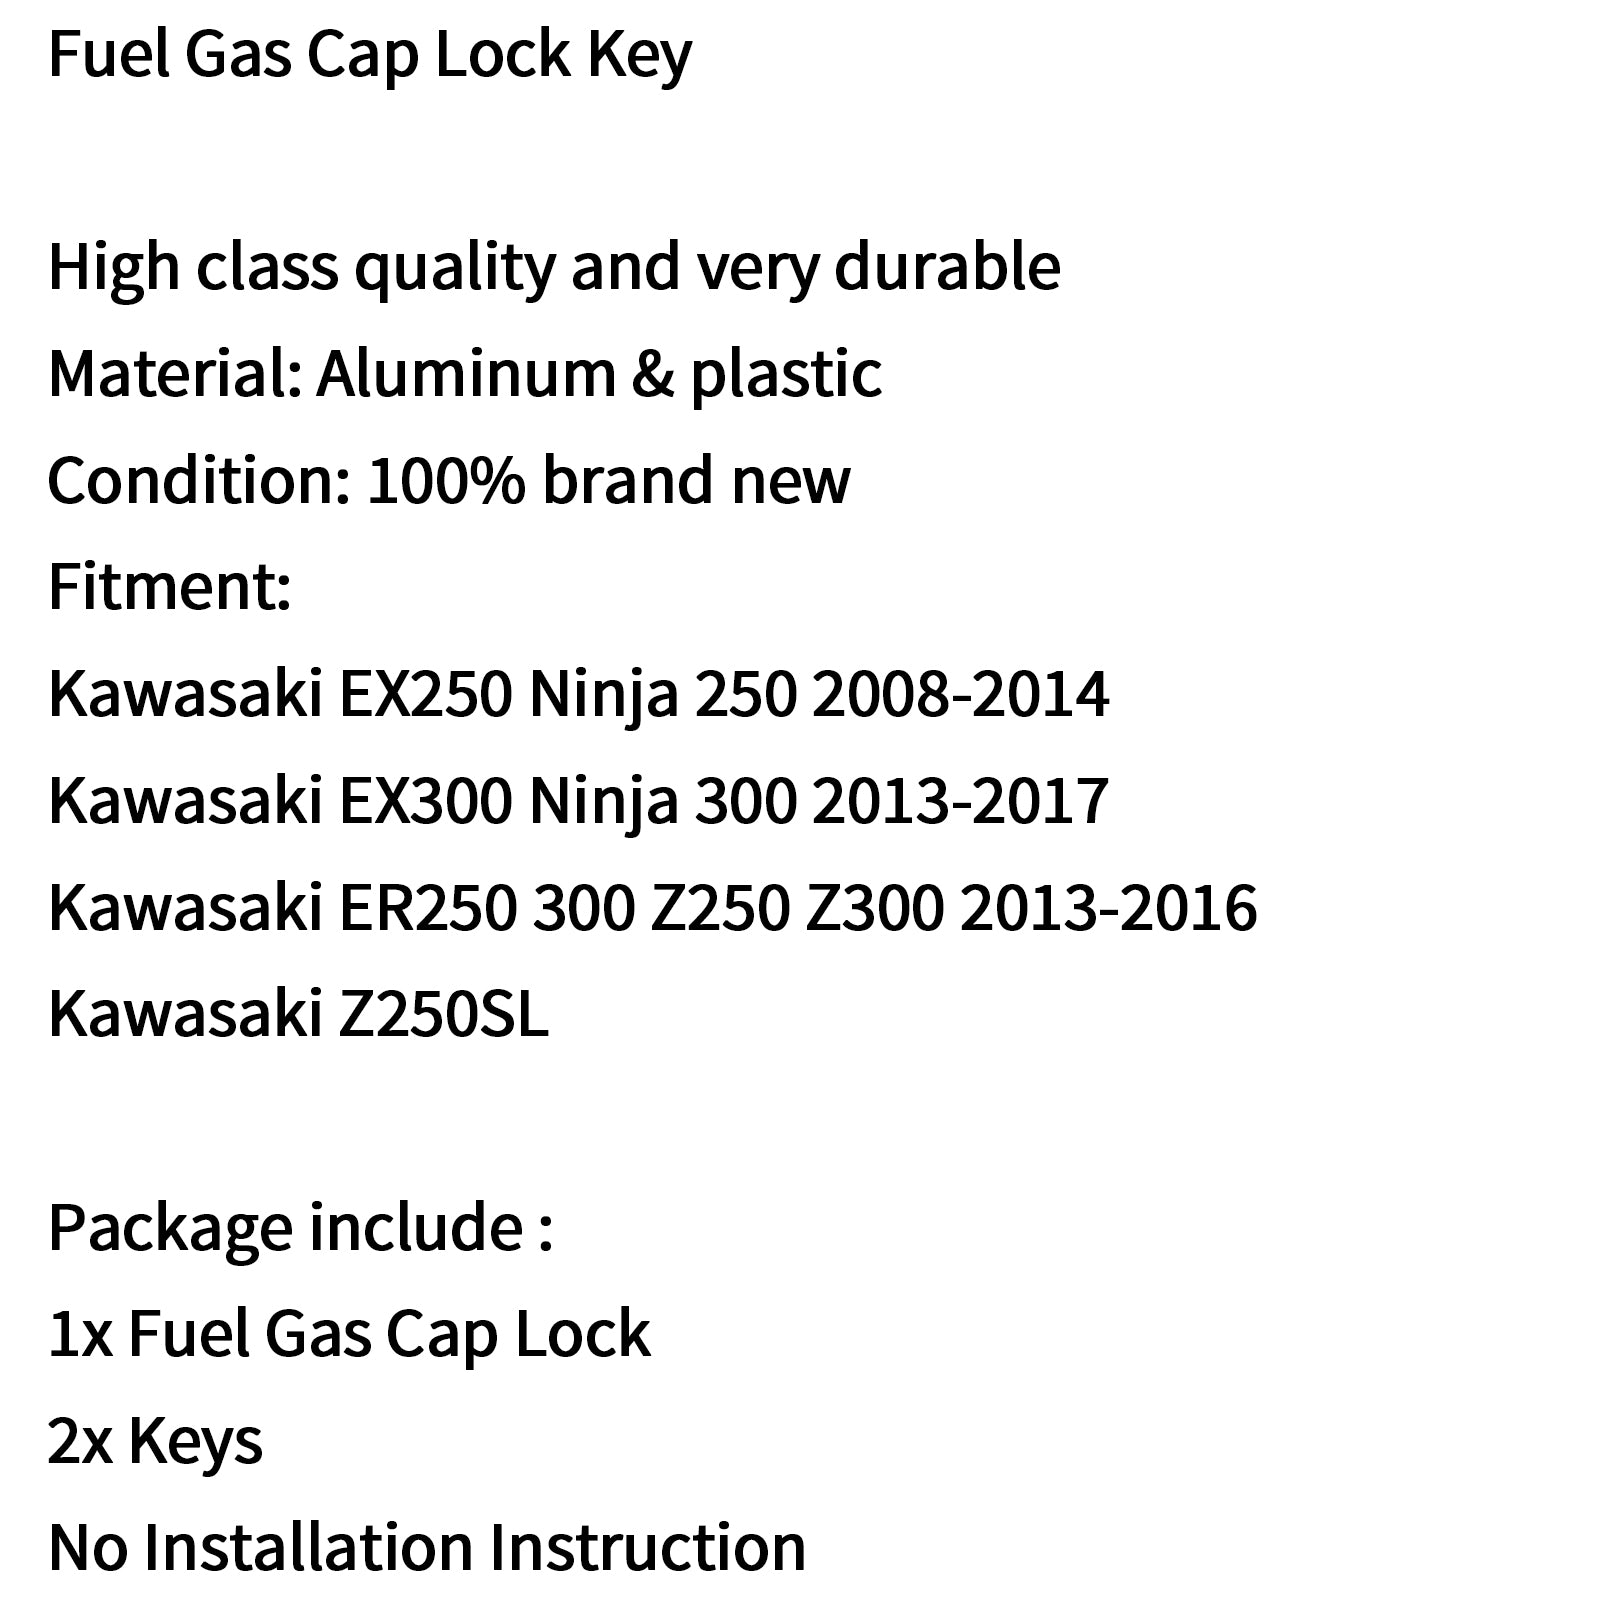 Kraftstofftankdeckelschlüssel für Kawasaki Ninja EX250 EX300 ER250 ER300 Z250 Z300 08-17